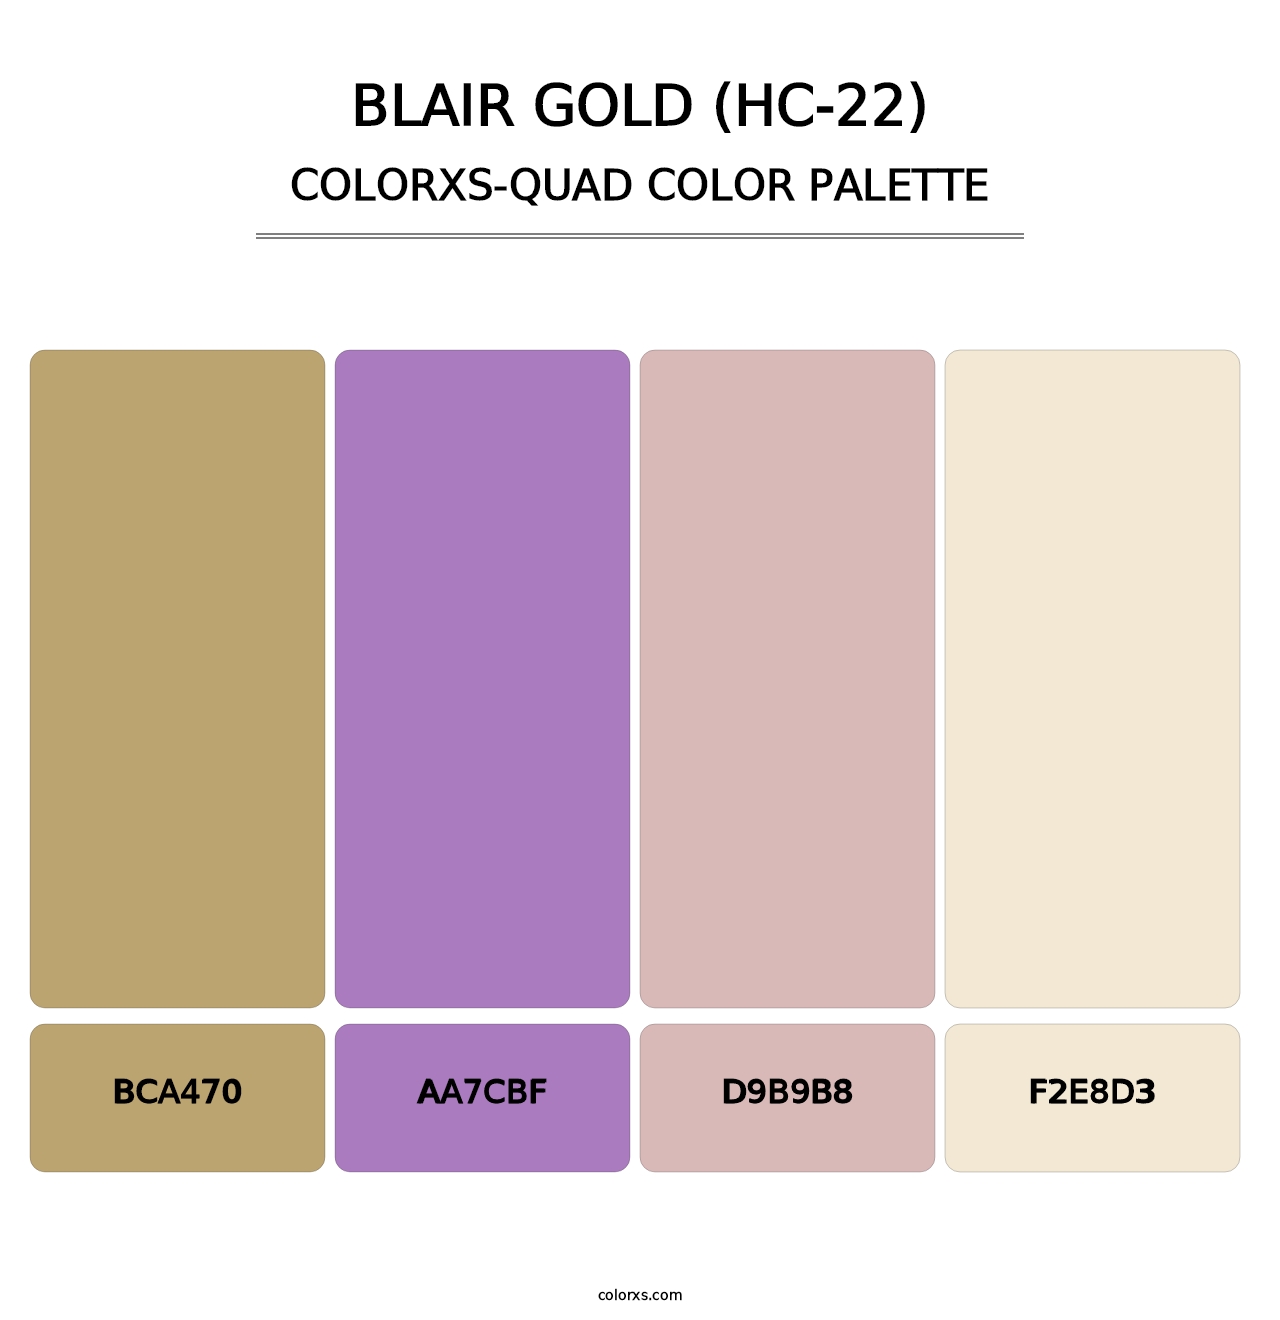 Blair Gold (HC-22) - Colorxs Quad Palette